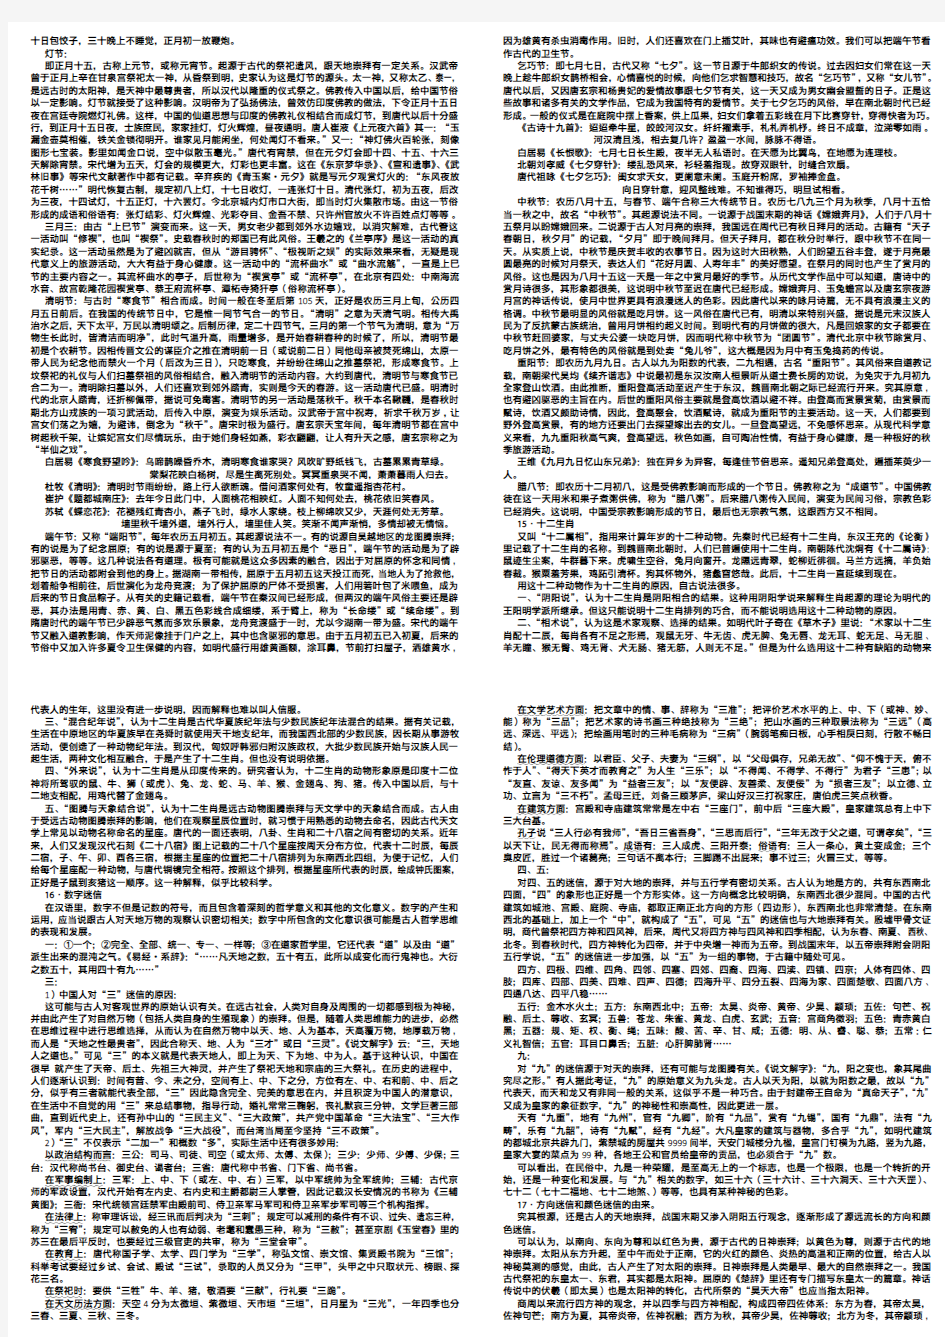 育明考研：汉语国际教育考研笔记(24)-中国文化要略-参考书、报录比、状元经验、招生简章 、真题